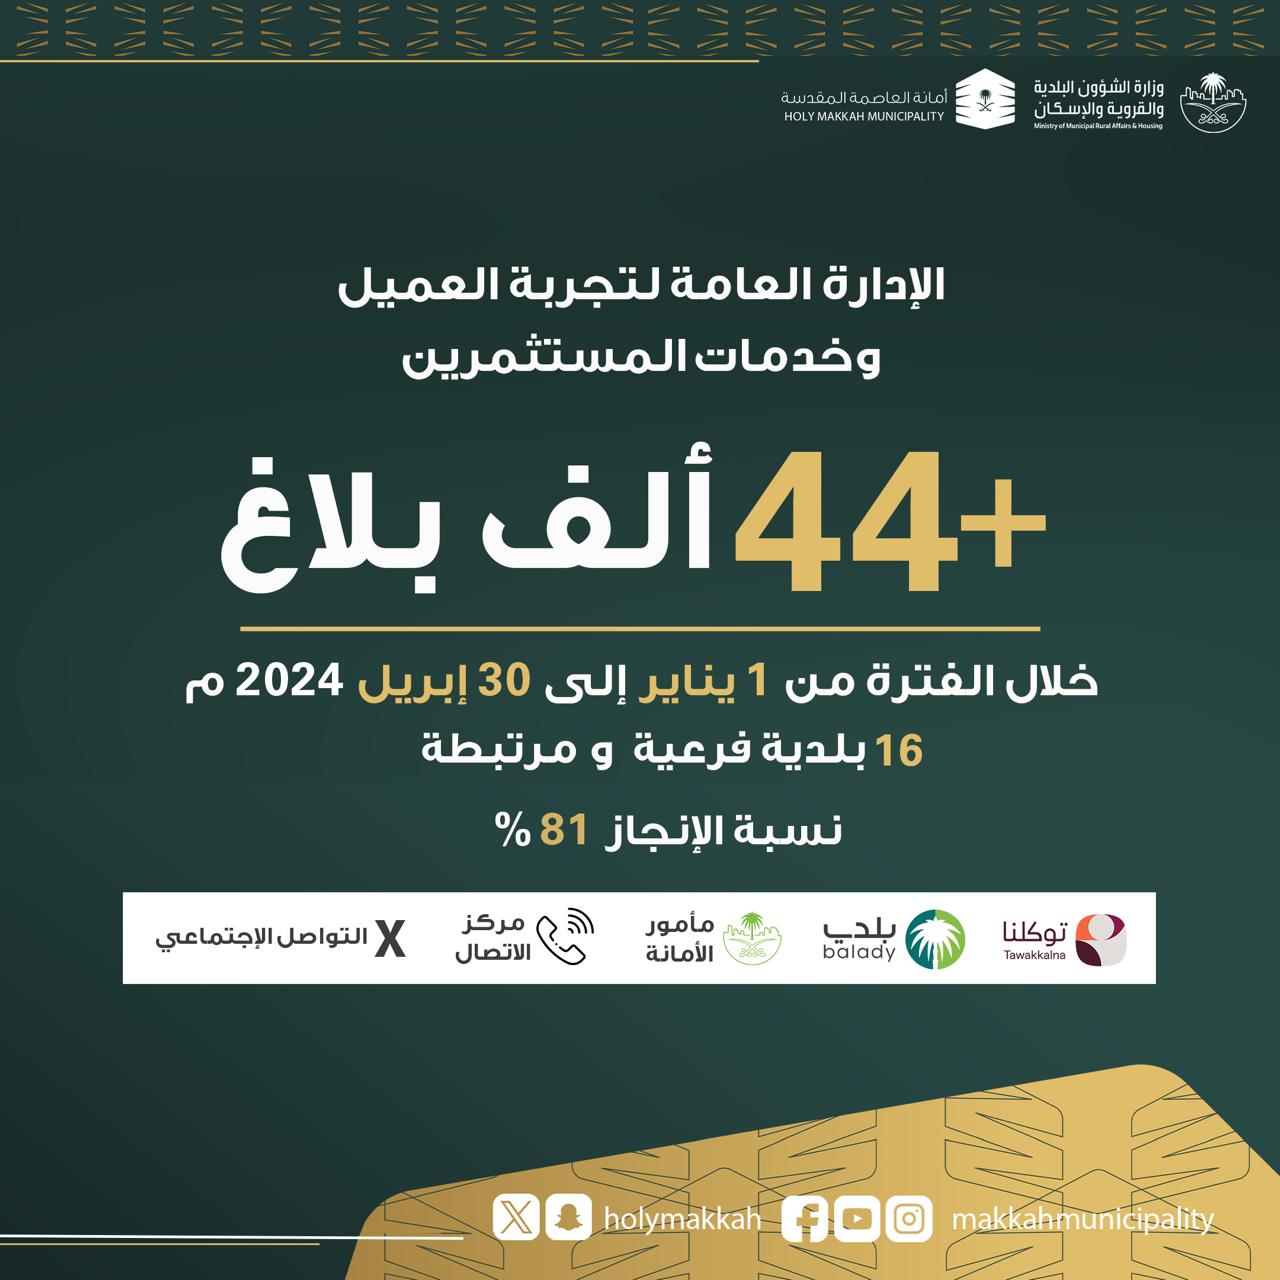 محليات السعودية: أمانة العاصمة المقدسة تستقبل أكثر من (44) ألف بلاغ عبر قنواتها المتعددة